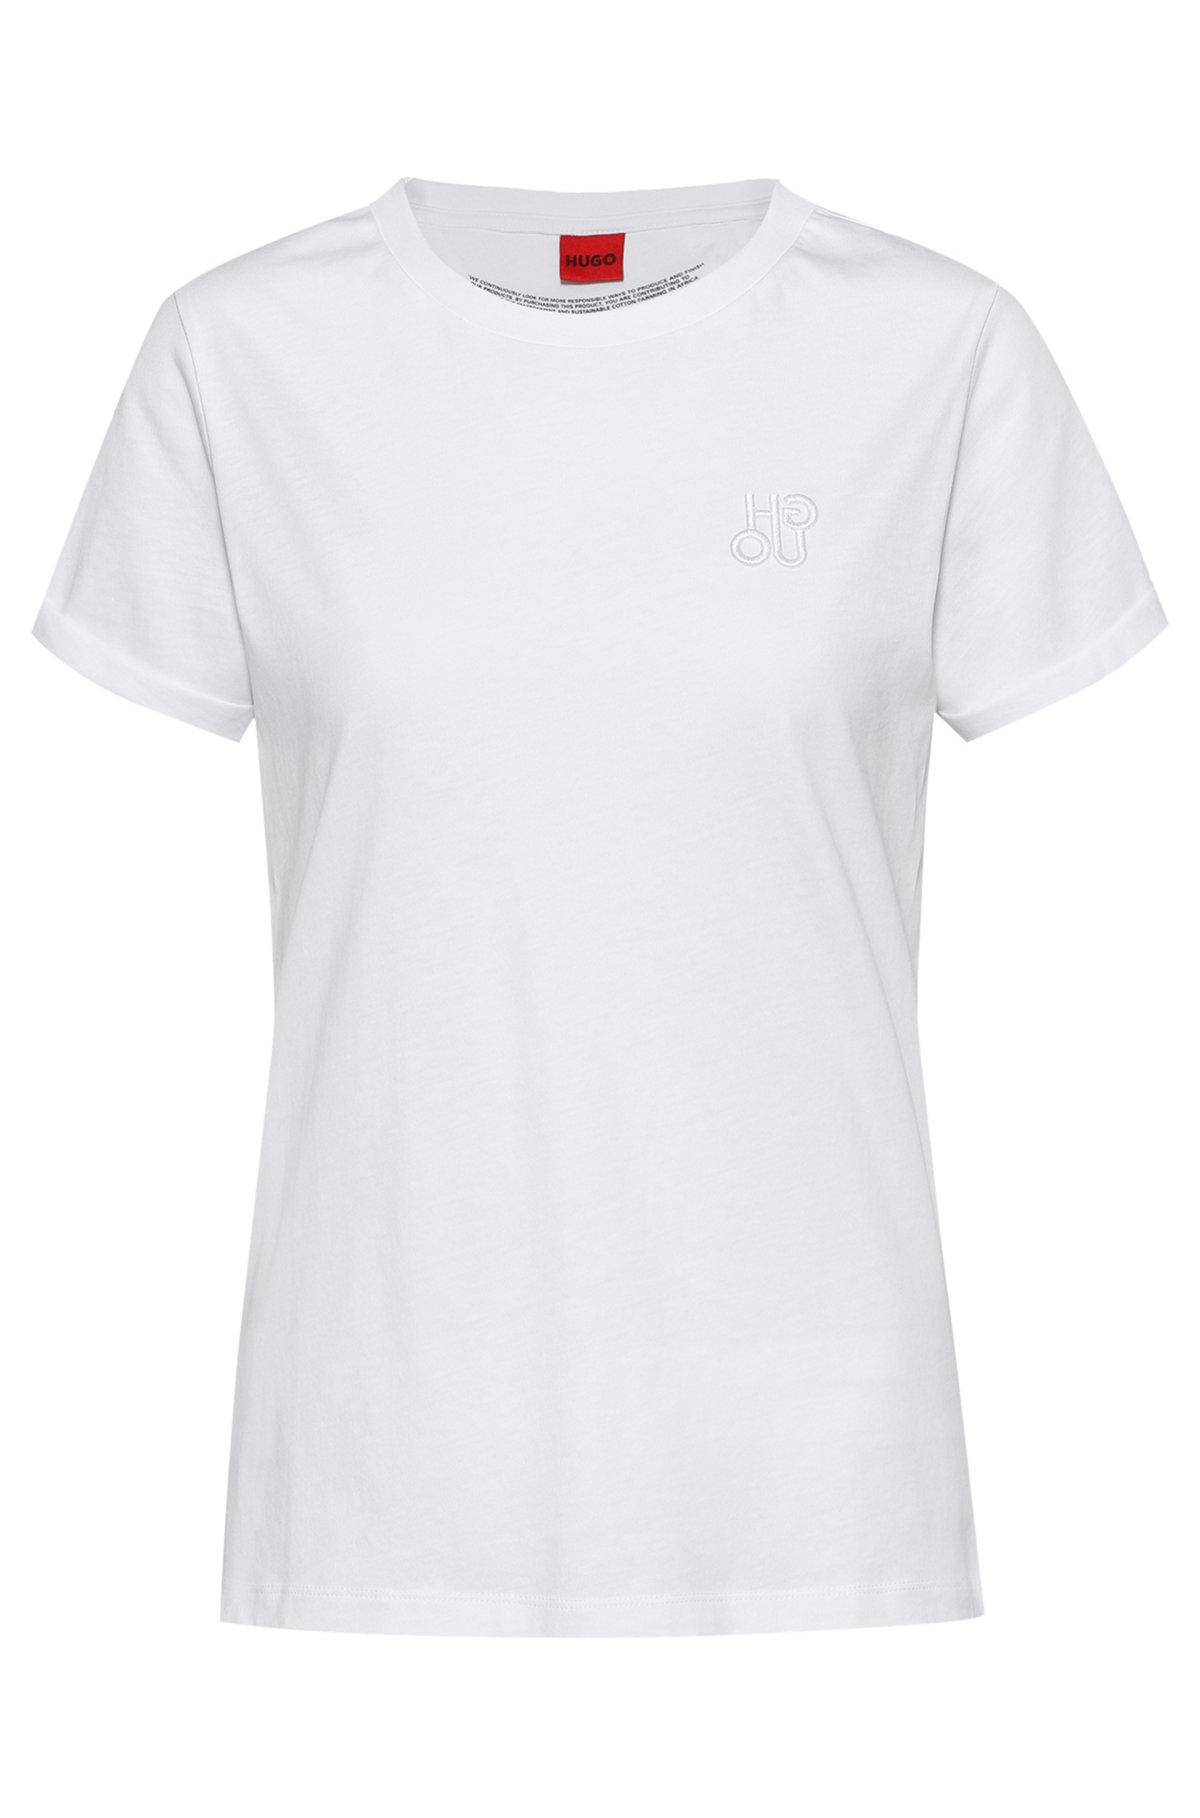 T-shirt Slim Fit en jersey de coton avec logo en relief, Blanc